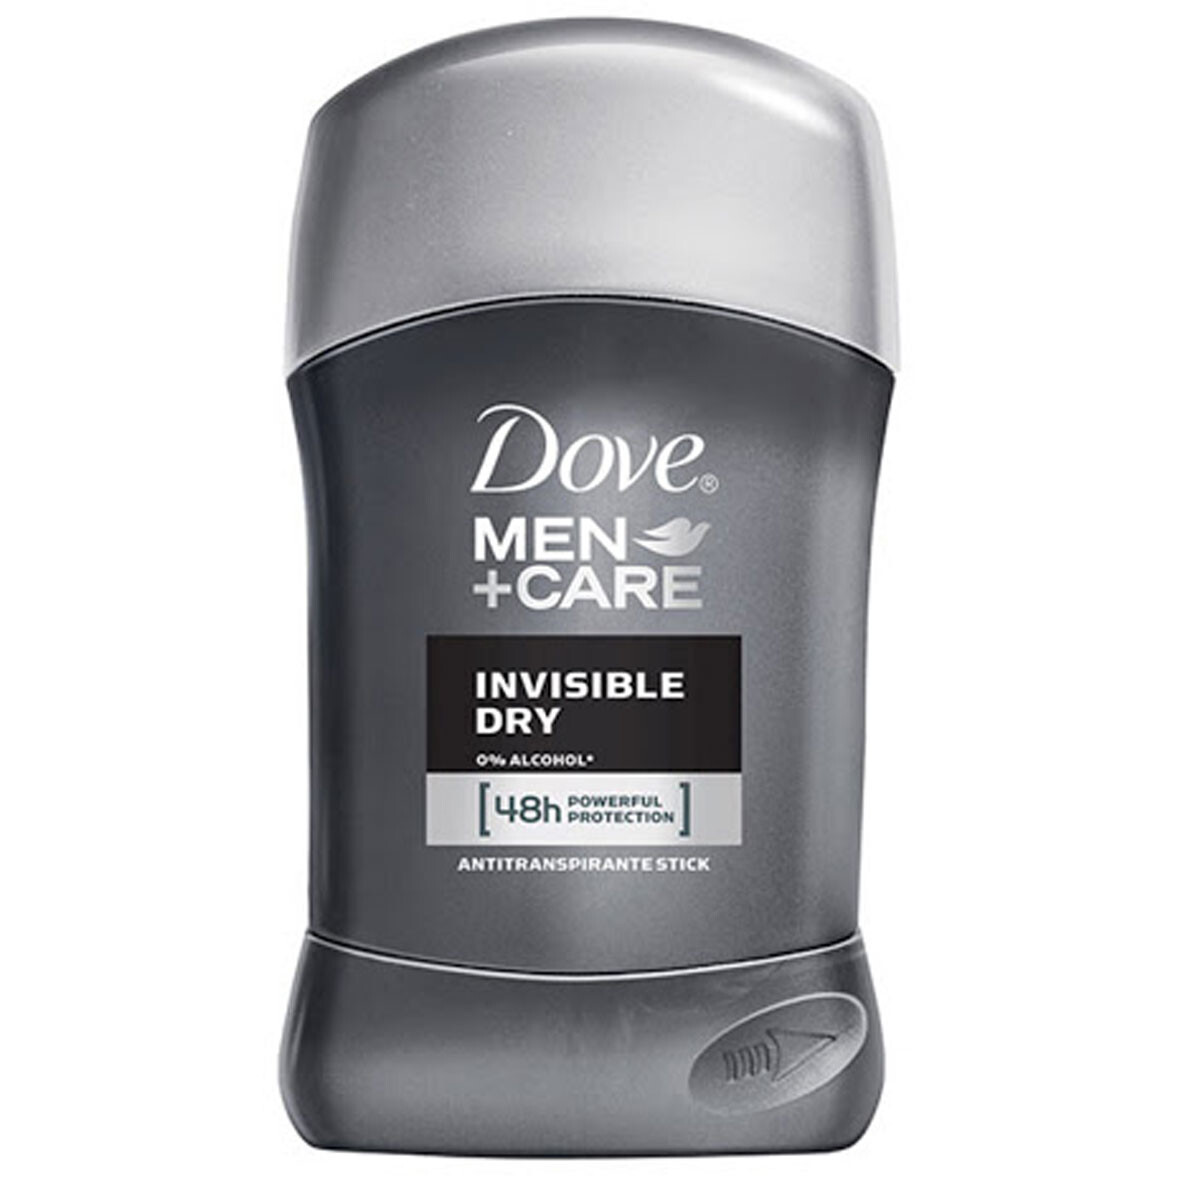 Antitranspirante Stick Dove Invisible Dry Men+Care 50g 